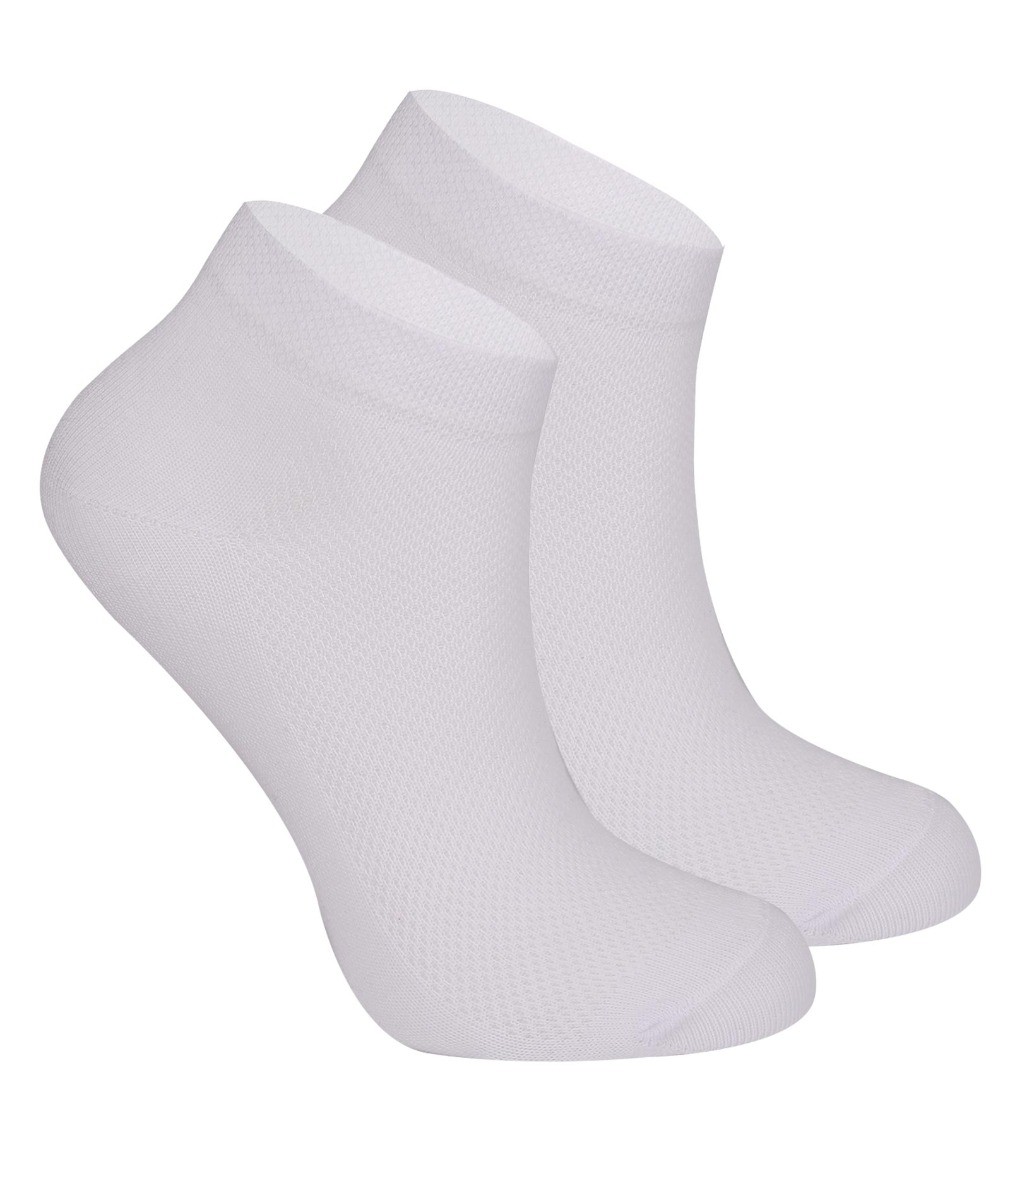 Chaussettes de cheville en coton extensible unisexe, pour garçons & filles - Blanc